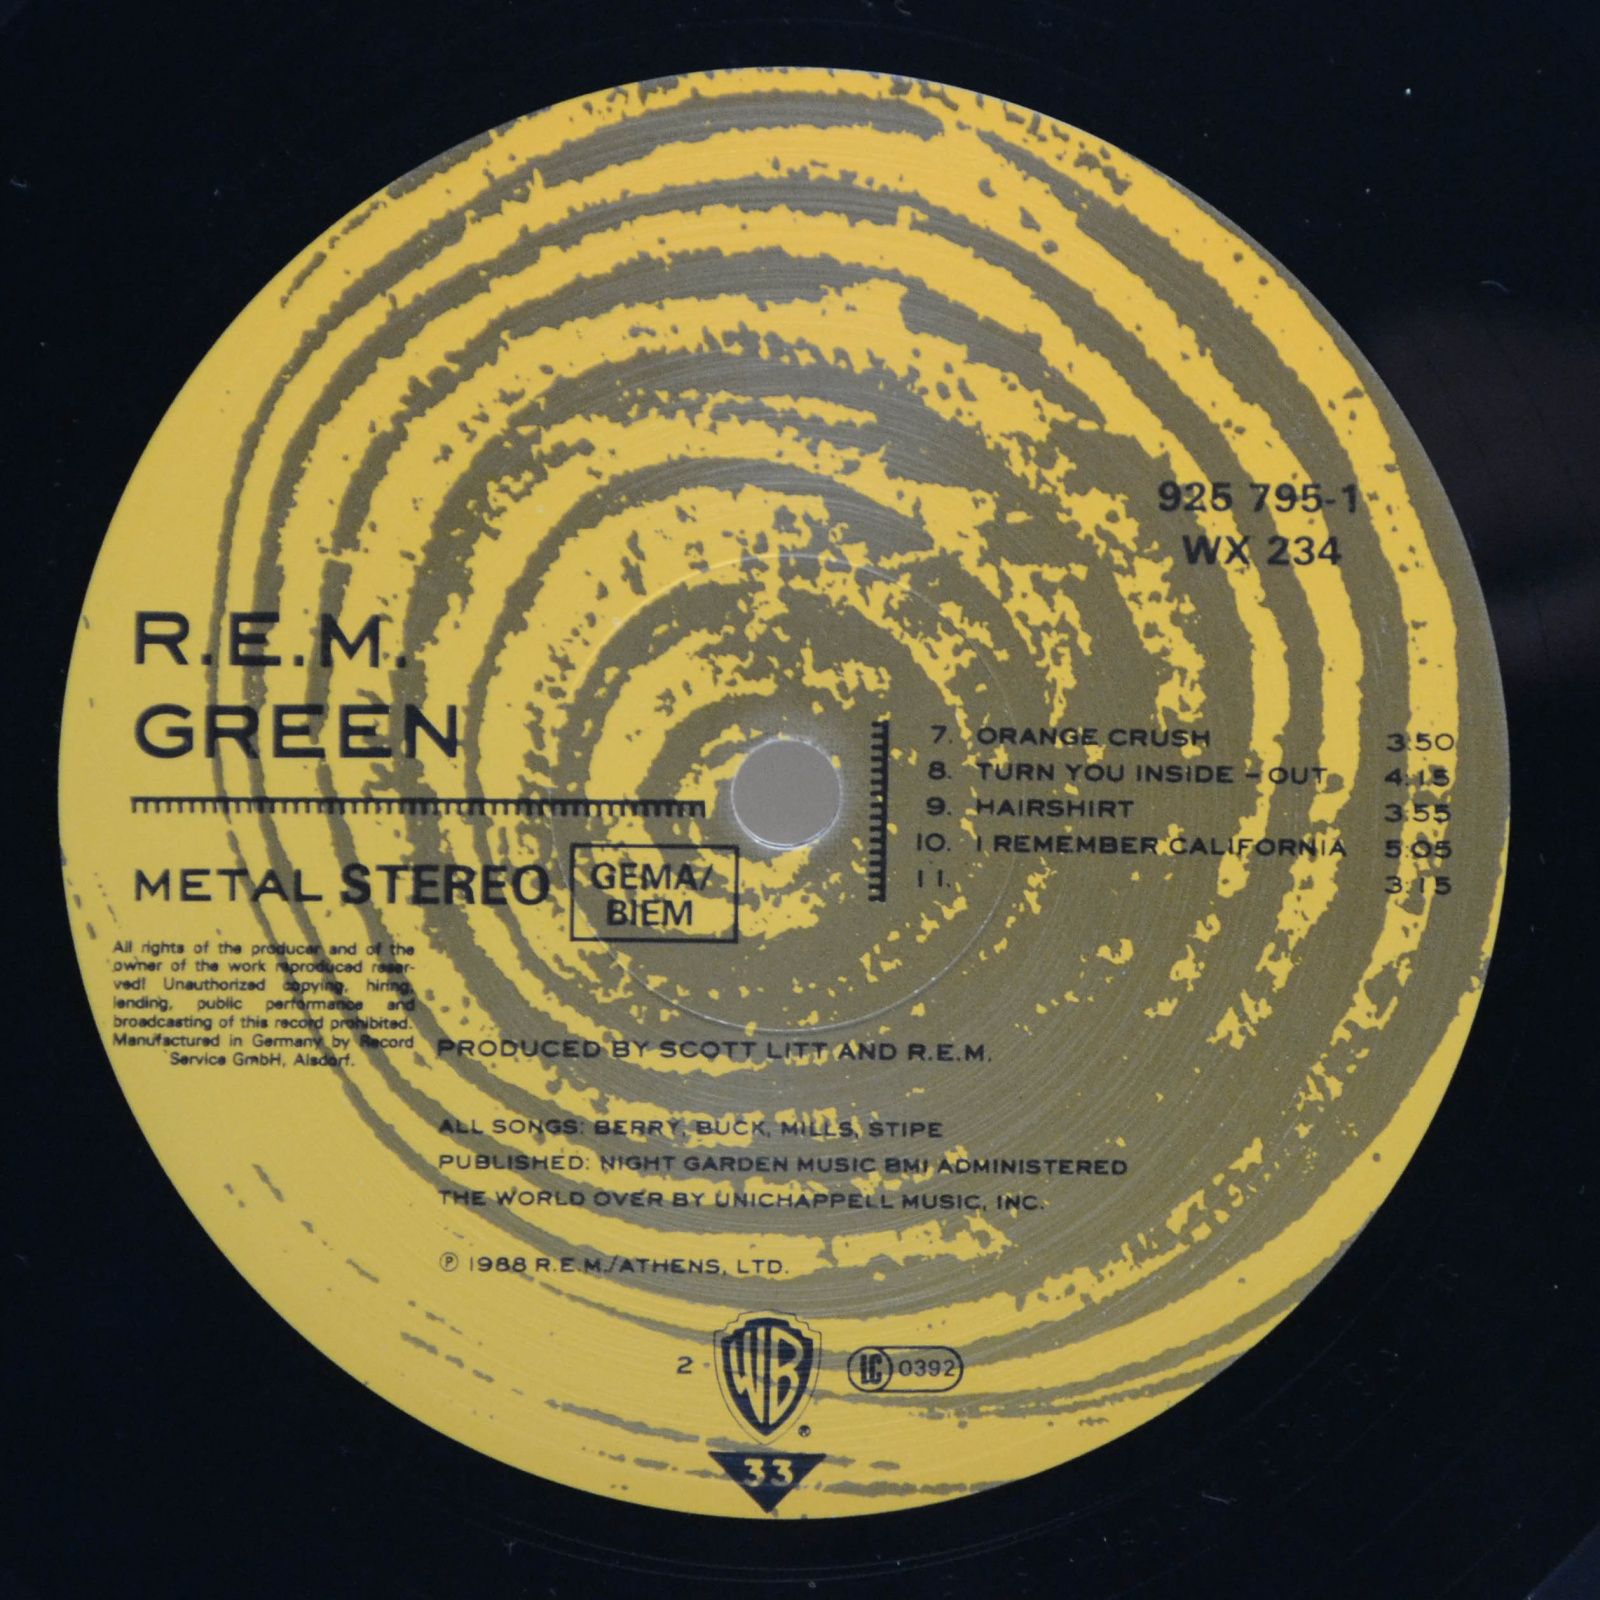 R.E.M. — Green, 1988